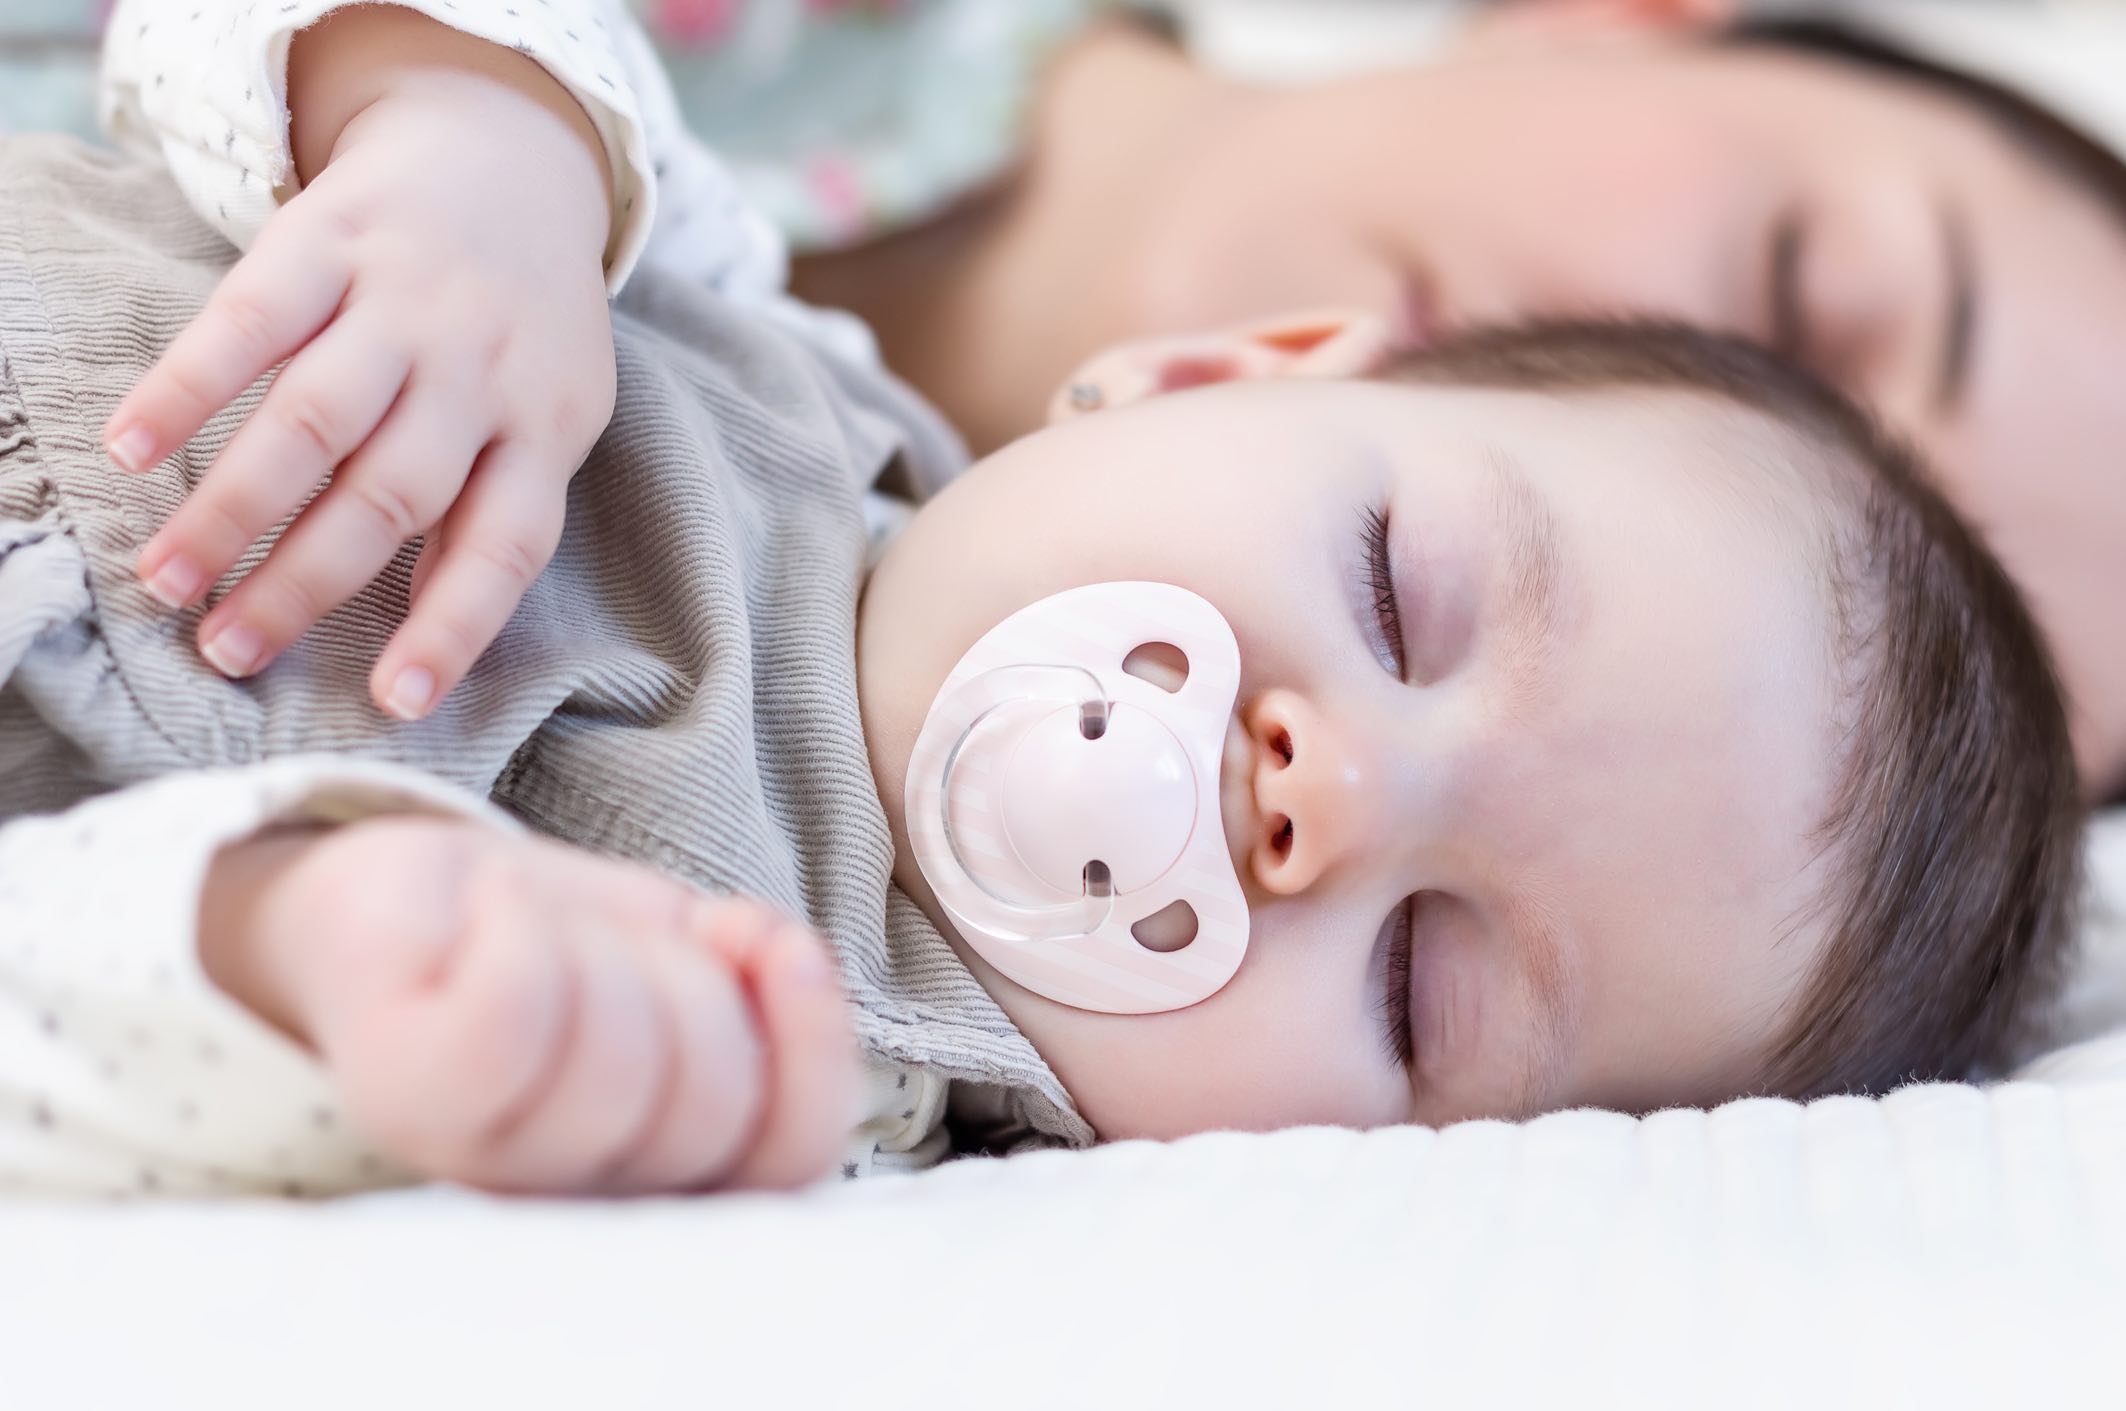 Thời gian ngủ của trẻ sơ sinh khoảng 12 - 16 tiếng một ngày và cách ngủ của trẻ cũng sẽ thay đổi khá nhiều cho đến khi 1 tuổi.